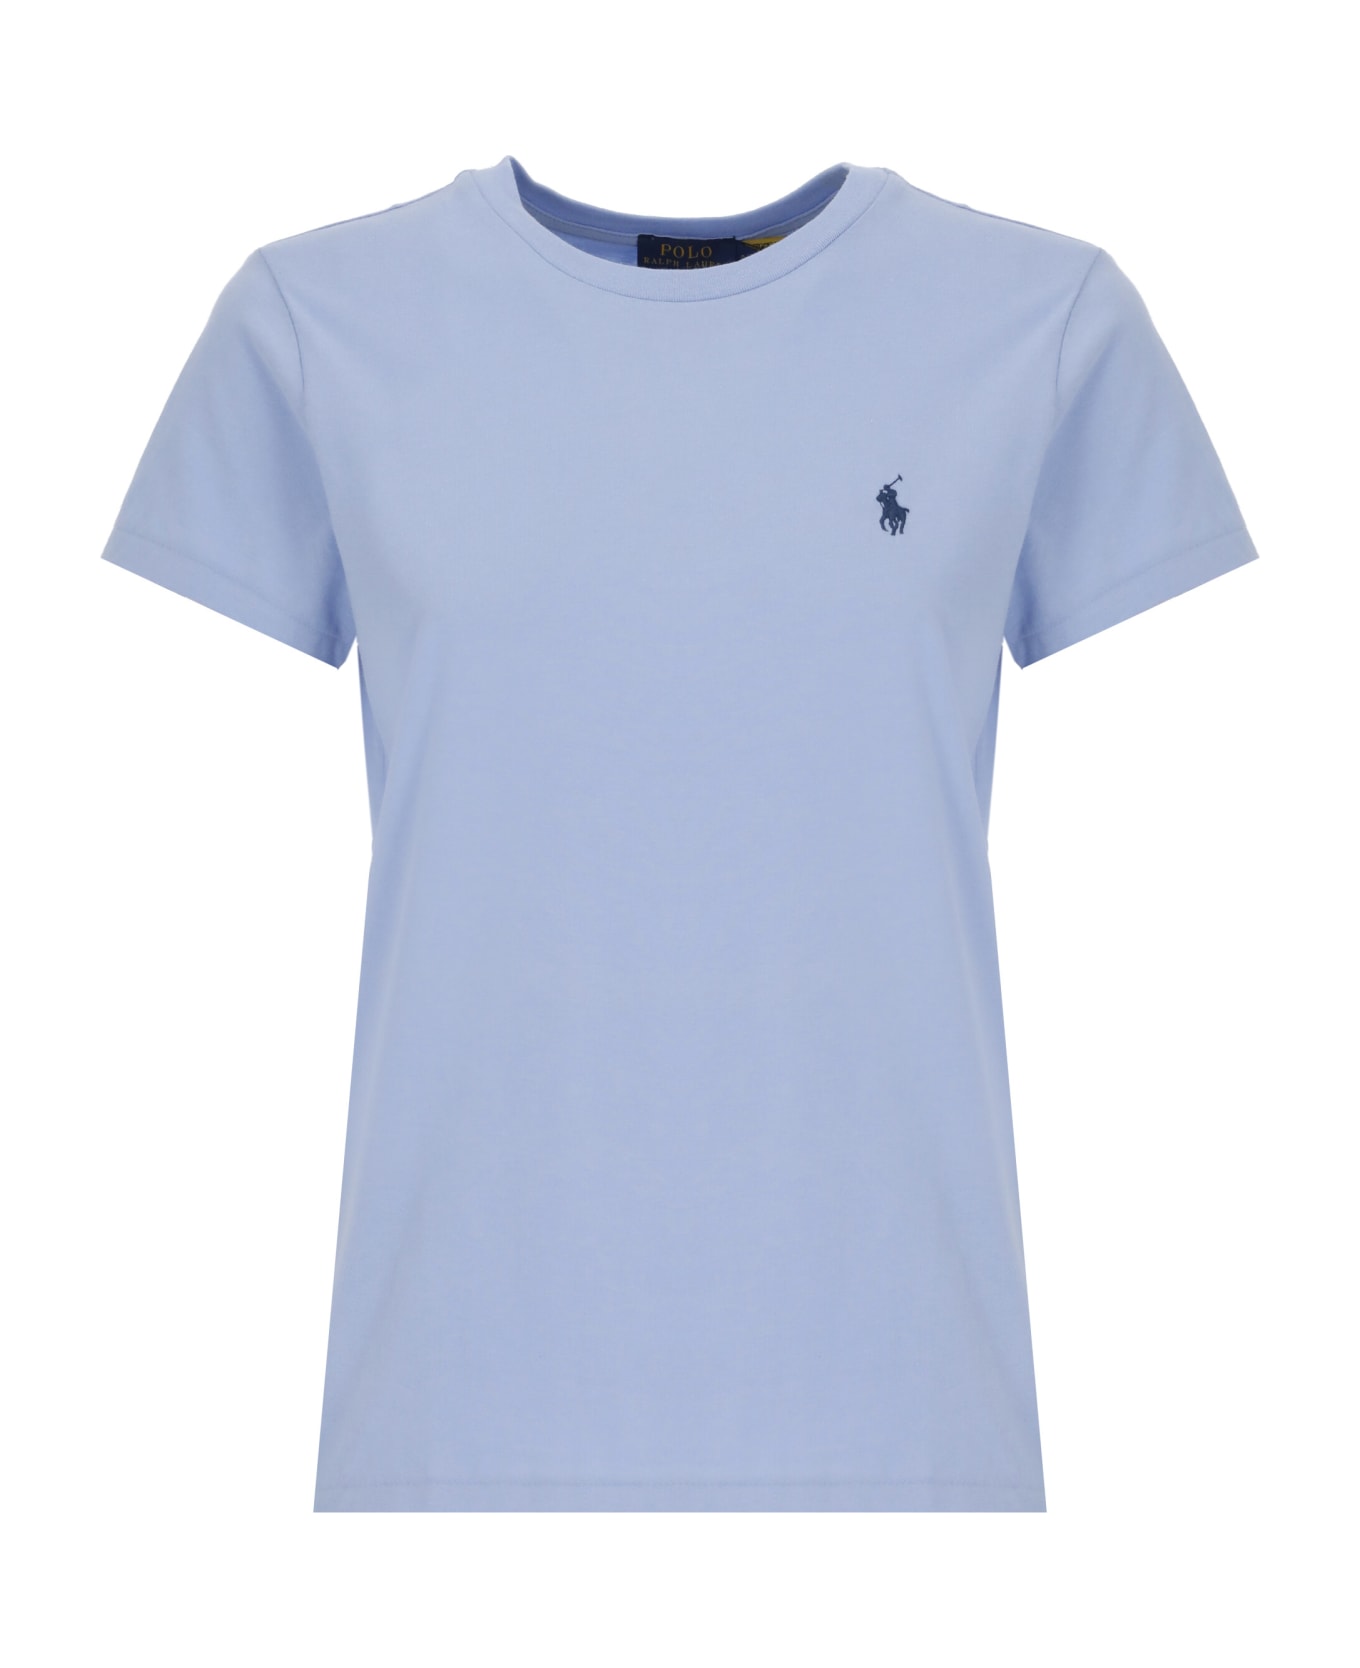 Ralph Lauren T-shirt With Pony - Dress Shirt Blue